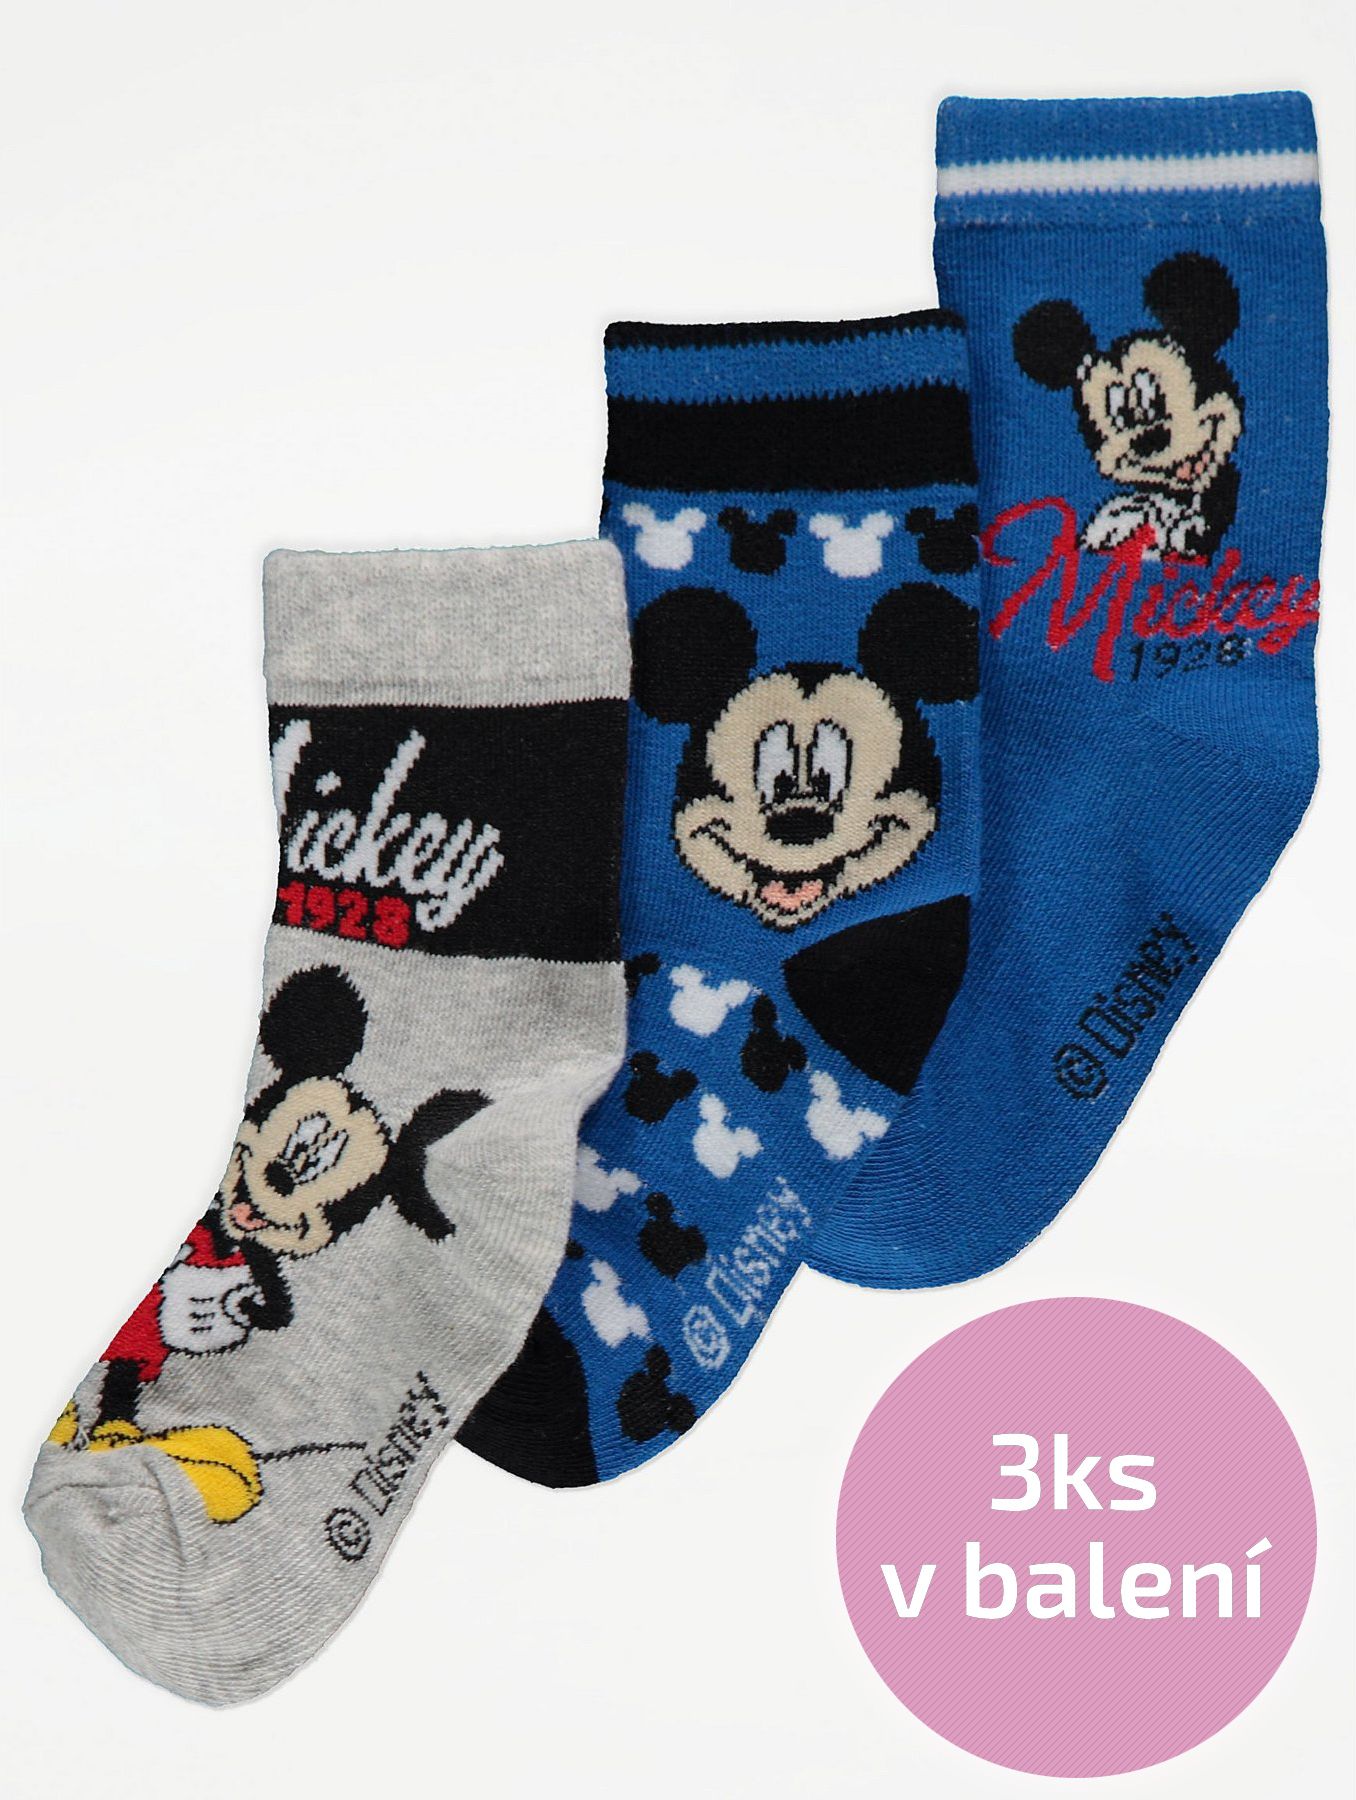 Chlapecké ponožky SUN-CITY, 3ks v balení, modré, motiv Mickey Mouse Velikost: EU 23 - 26.5 (2 - 3 roky) - obrázek 1